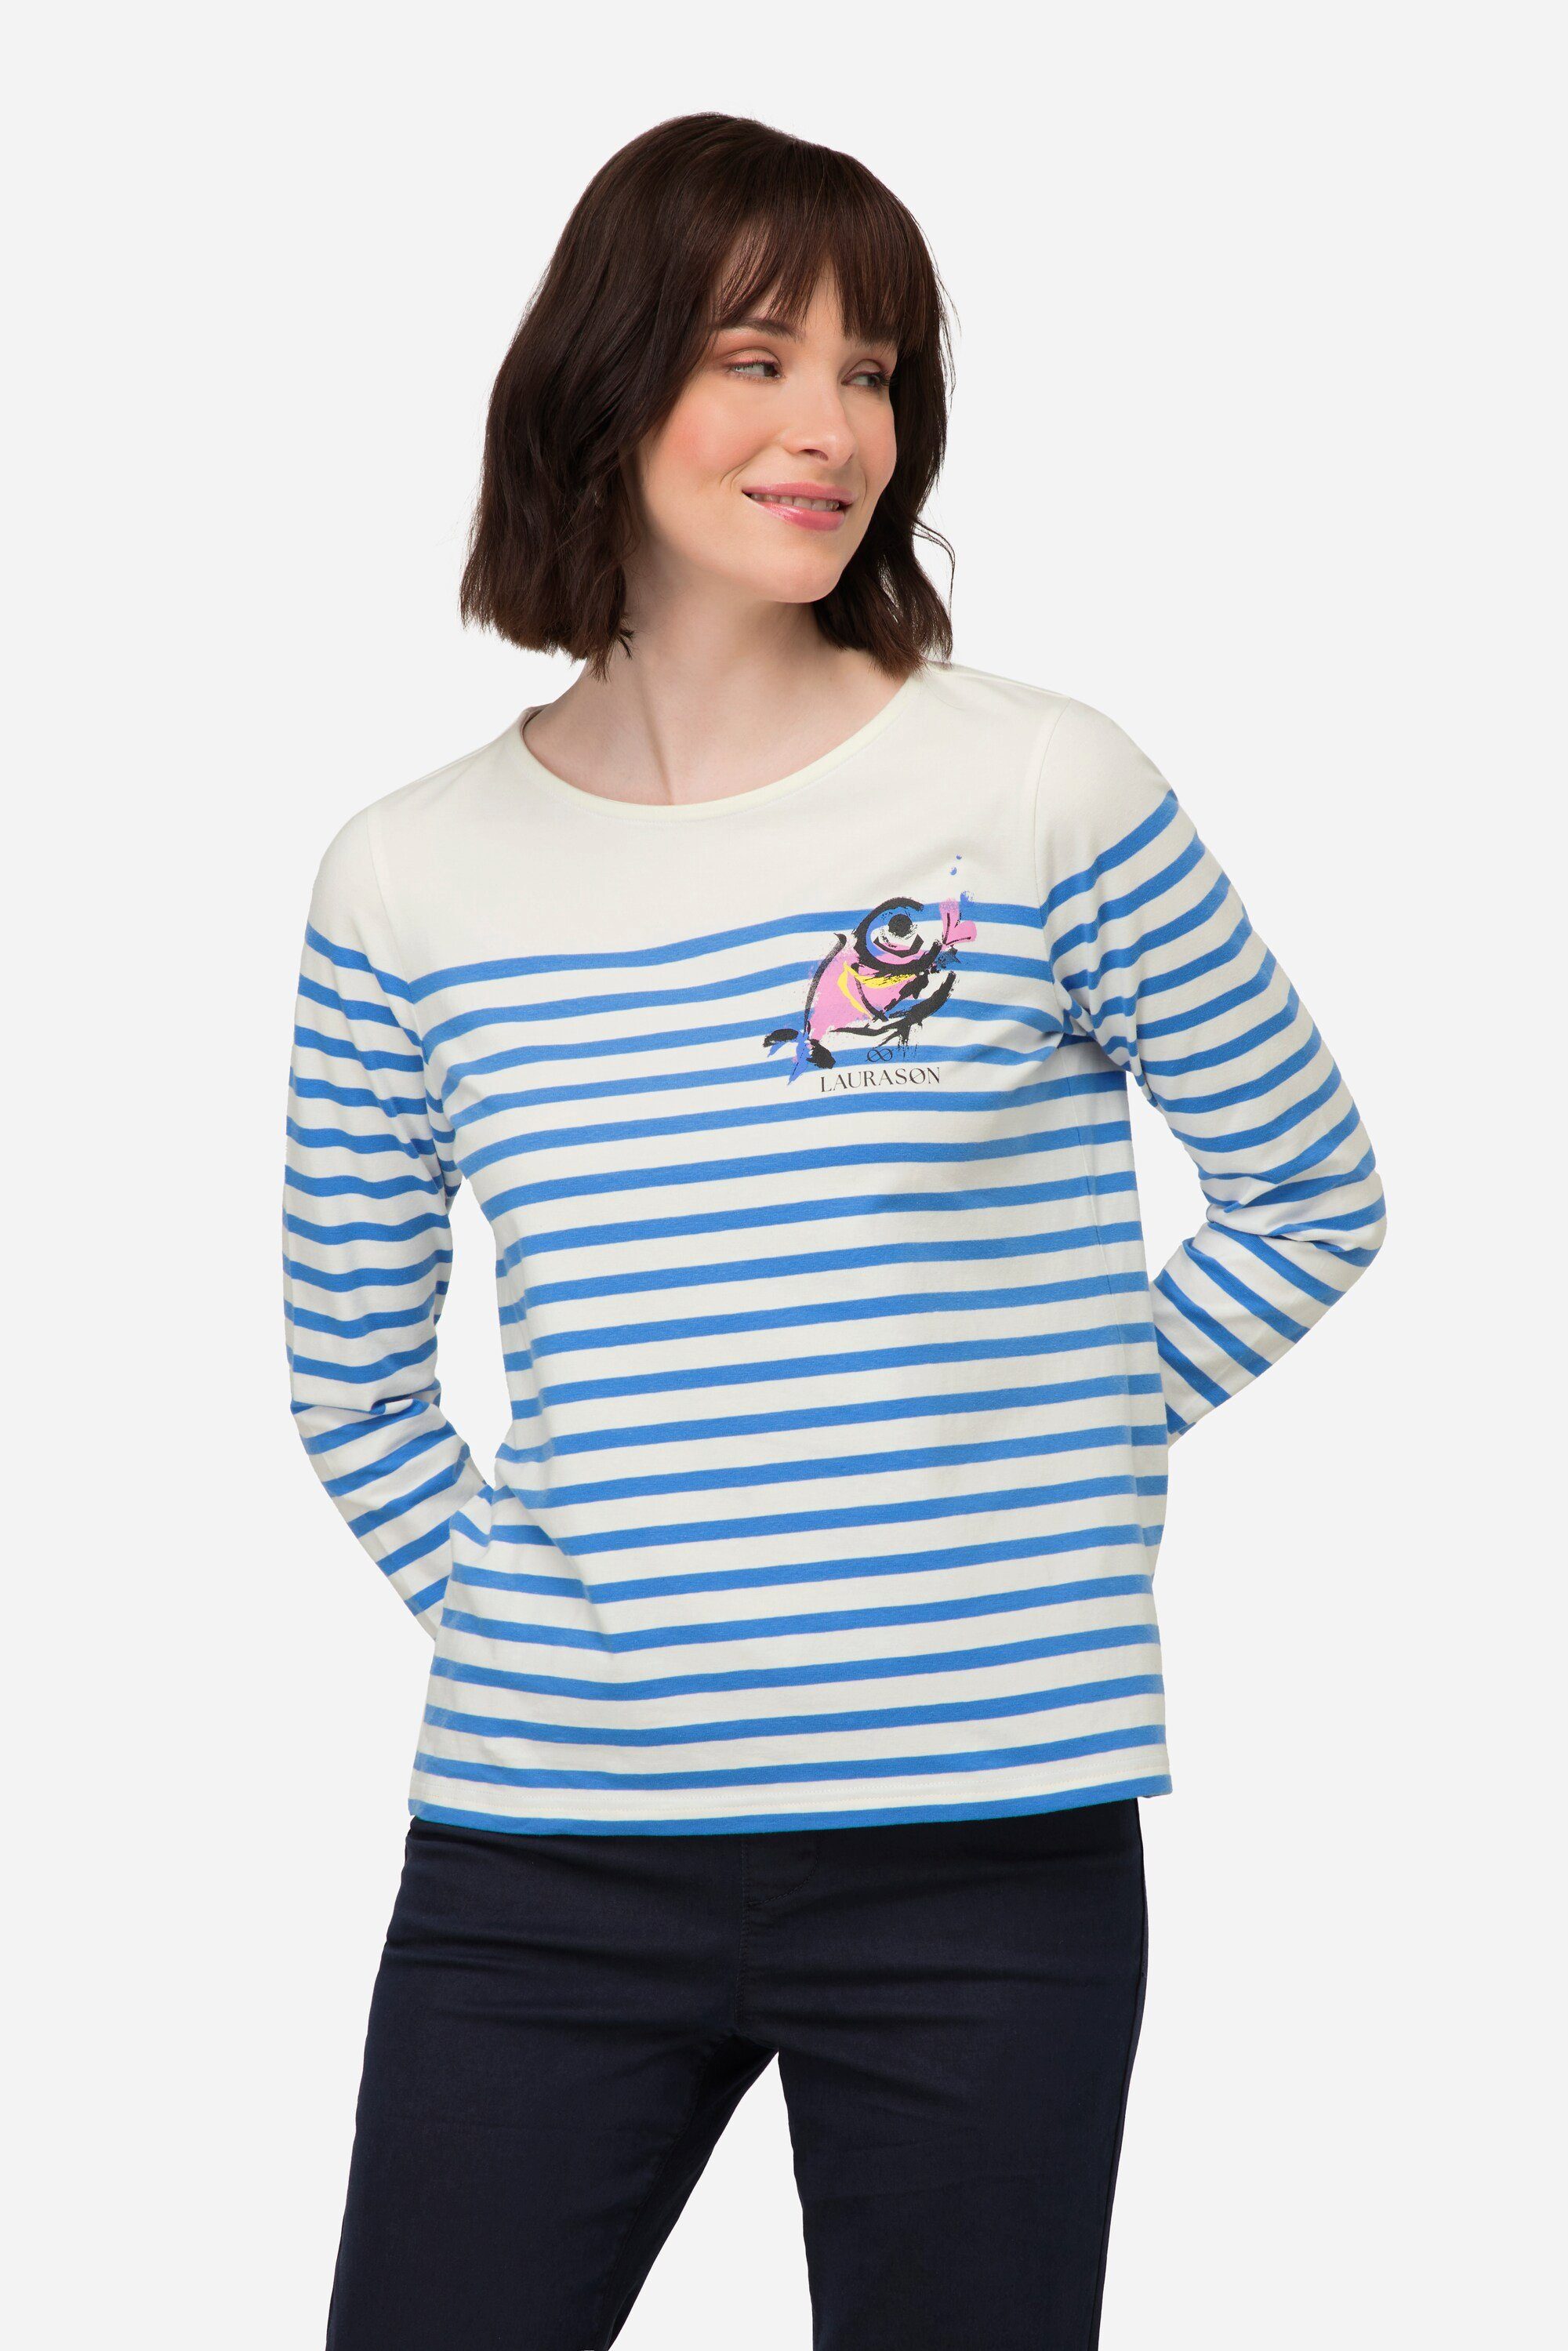 Laurasøn Rundhalsshirt T-Shirt Ringel Fisch Motiv Rundhals Langarm azurblau